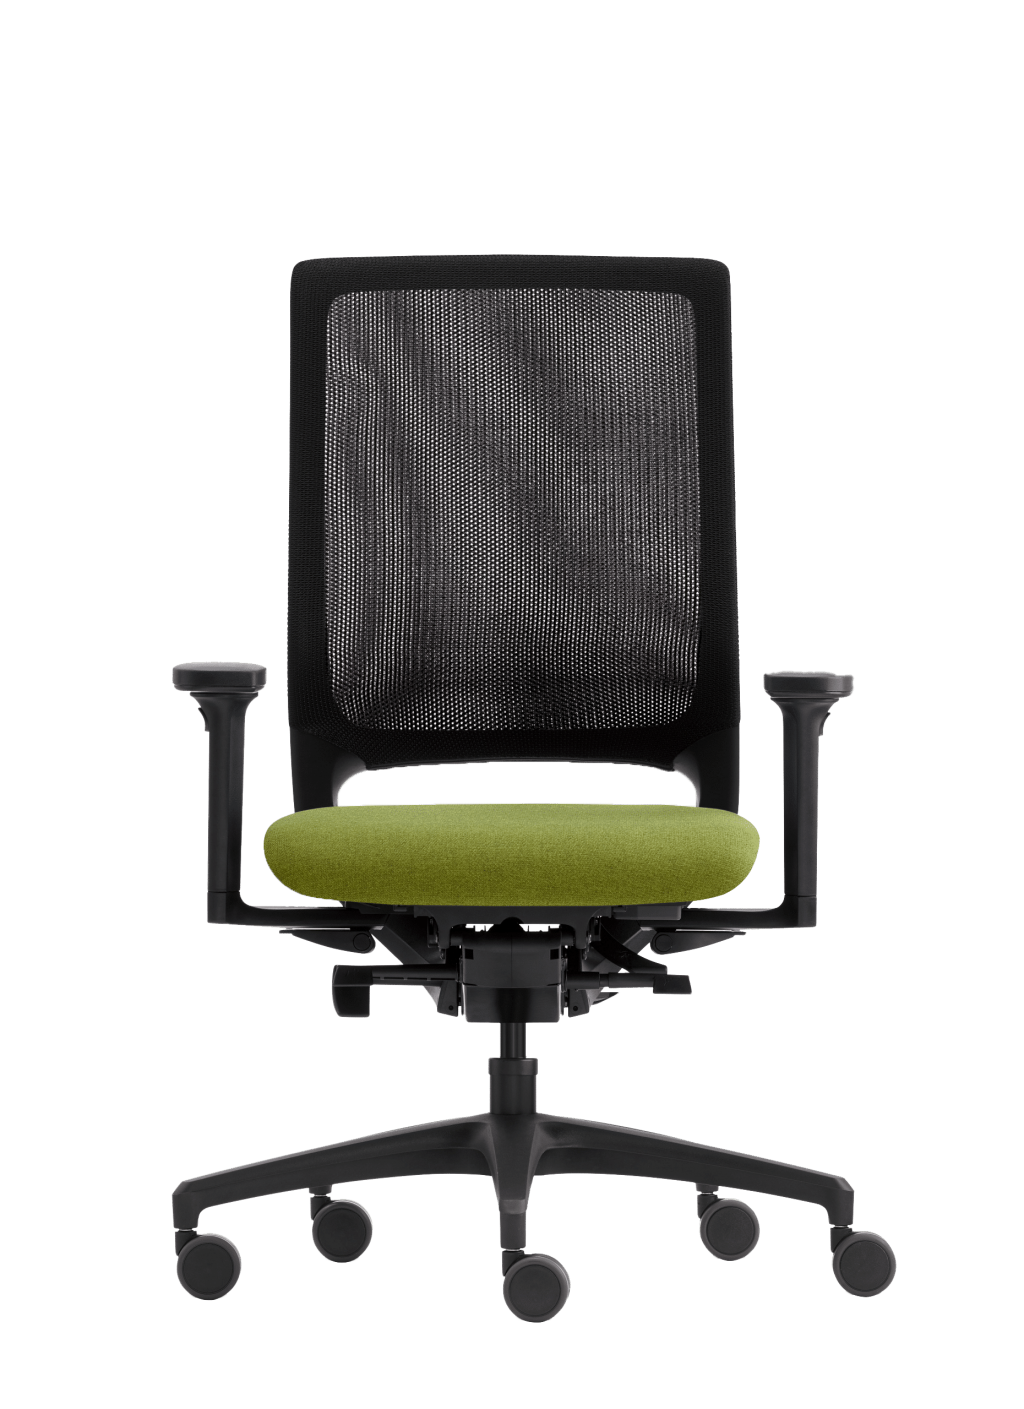 Produktbild Drehstuhl Mera von Klöber mit schwarzem Gestell und Rollen sowie schwarzem Netzrücken und hellgrünem Sitzpolster.